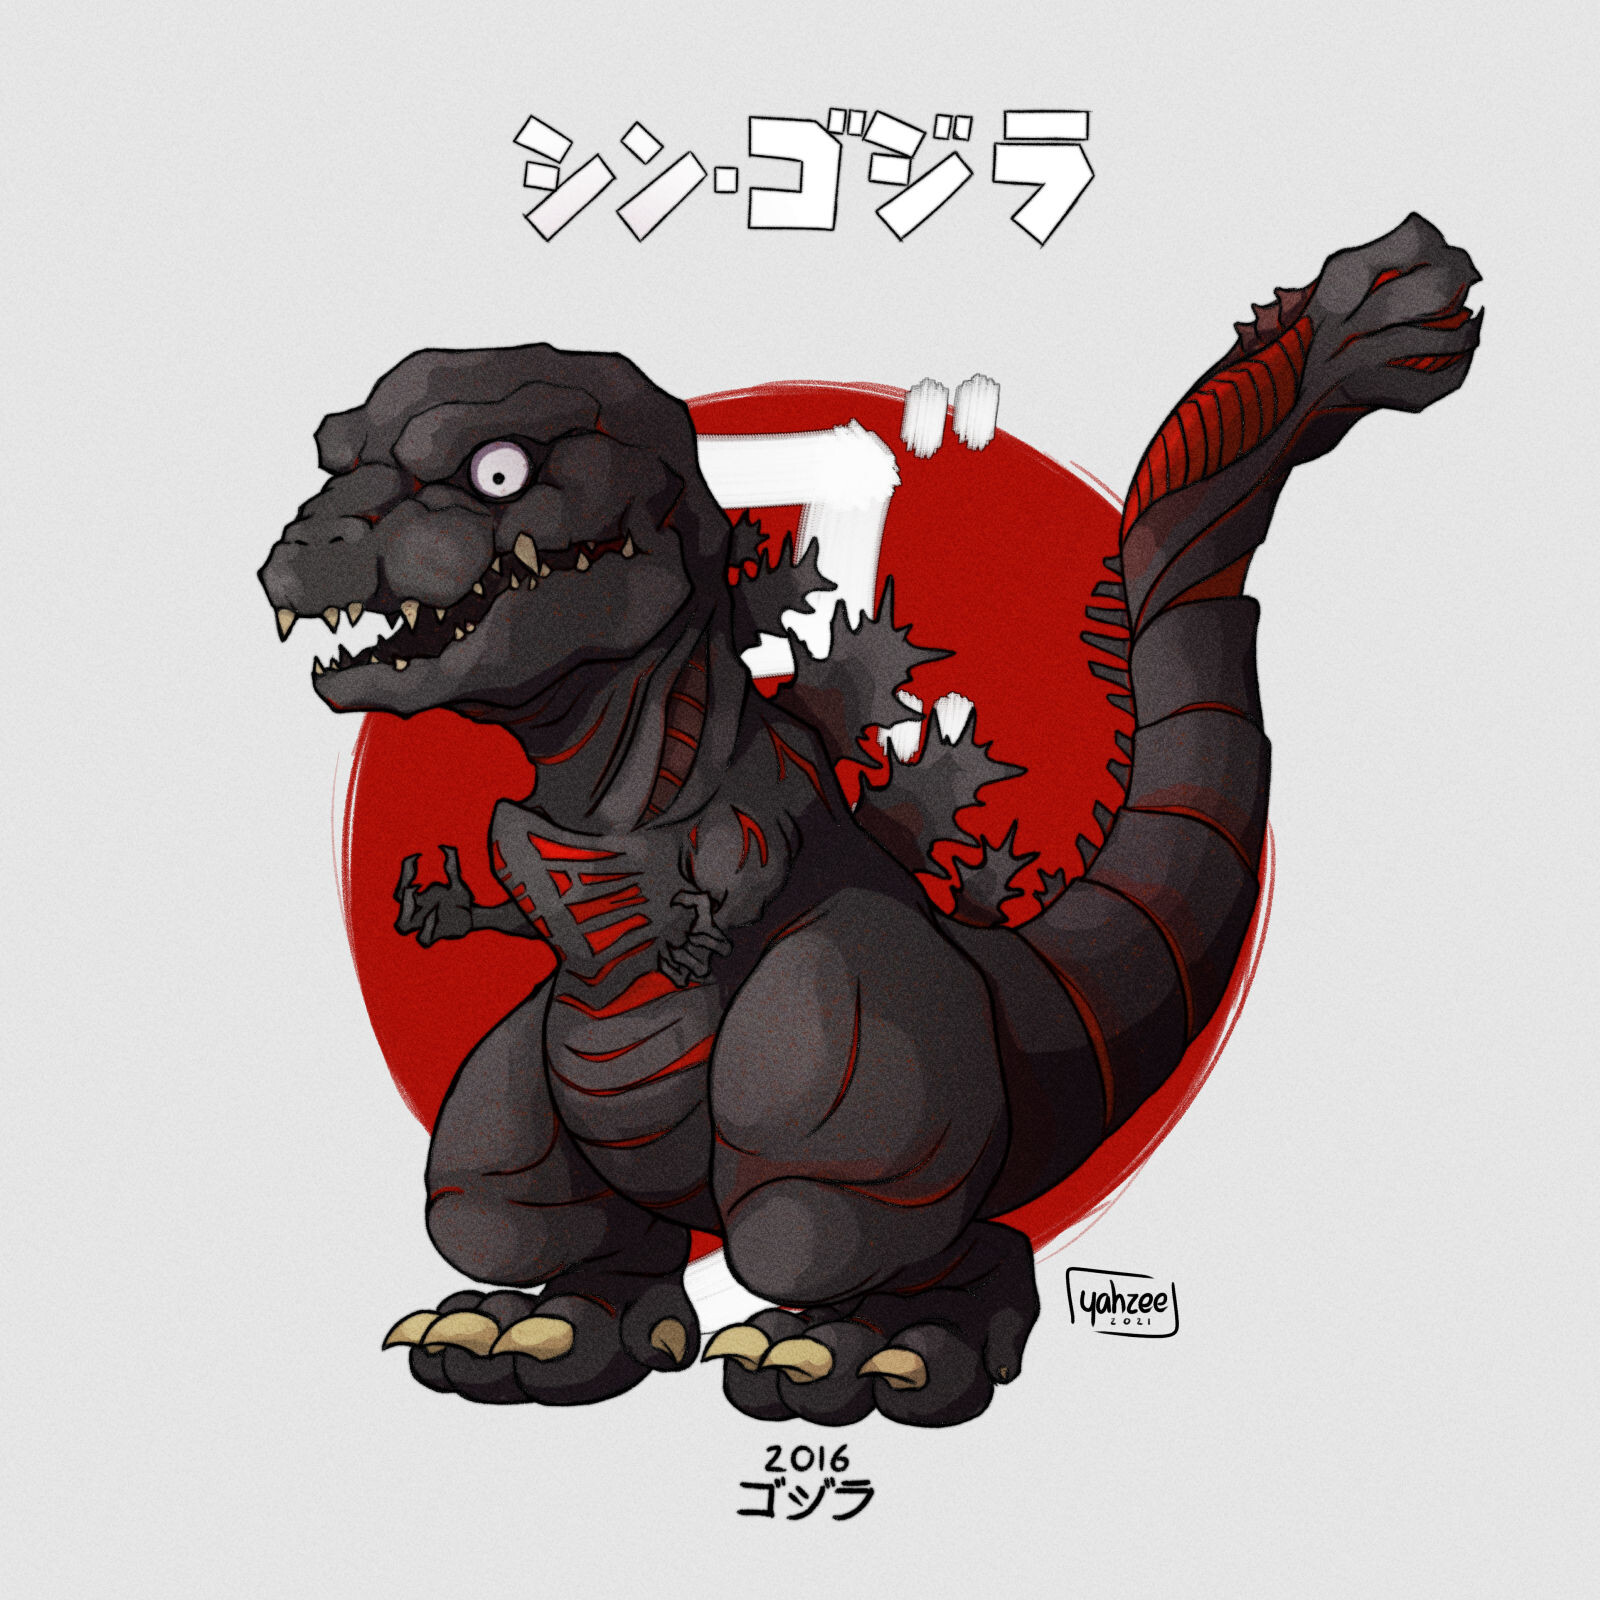 Chuỗi bài theo chủ đề] Godzilla - Hành trình quái vật | Cinematone.info